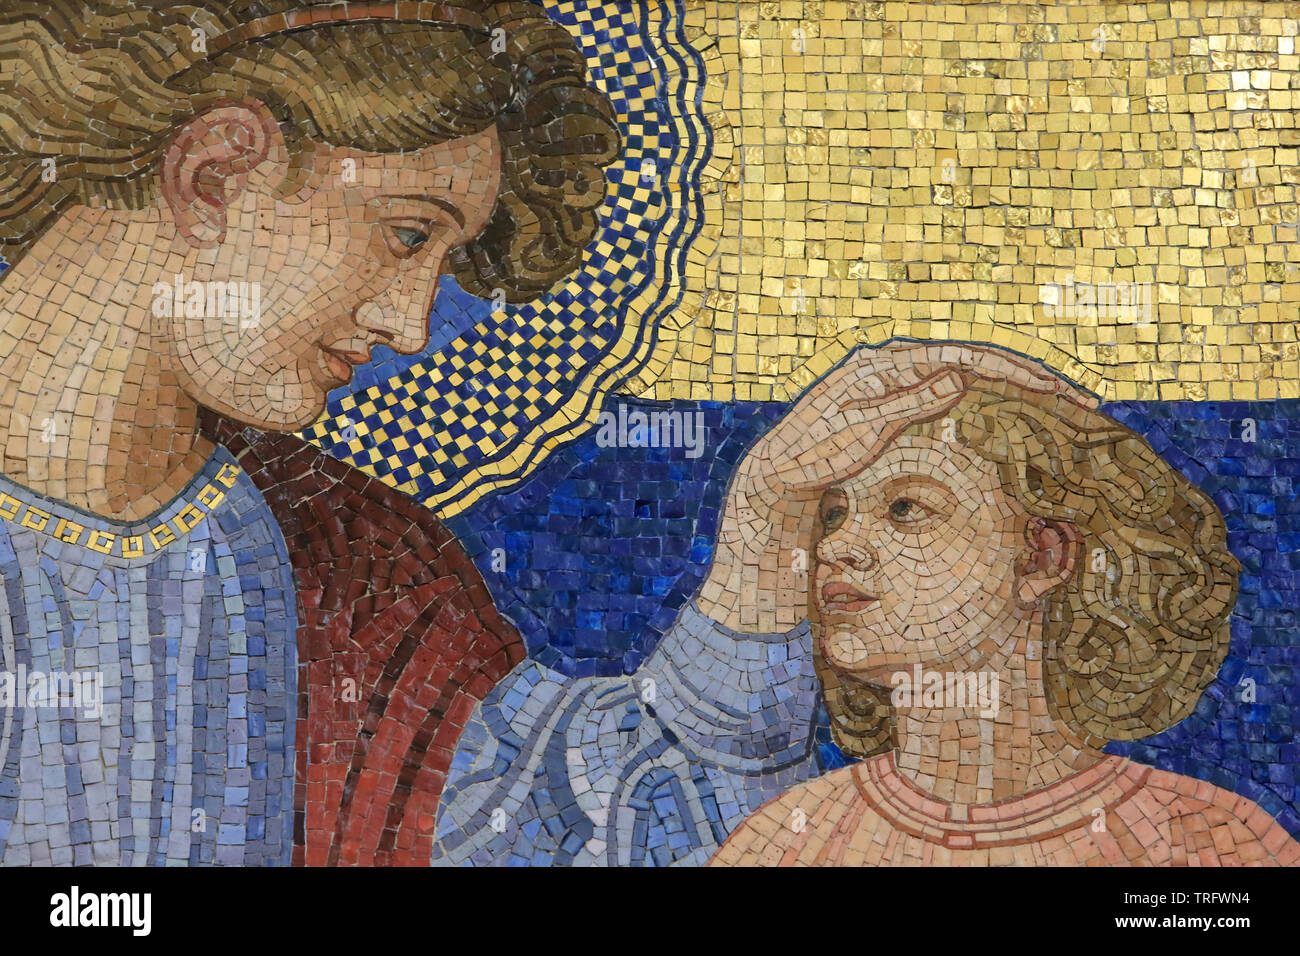 Ste. Anne. Mosaik von Rudolf Jettmar (1869-1939). Steinhof von Otto Wagner Kirche zwischen 1902 und 1907 gebaut. Vienne. Autriche. Stockfoto